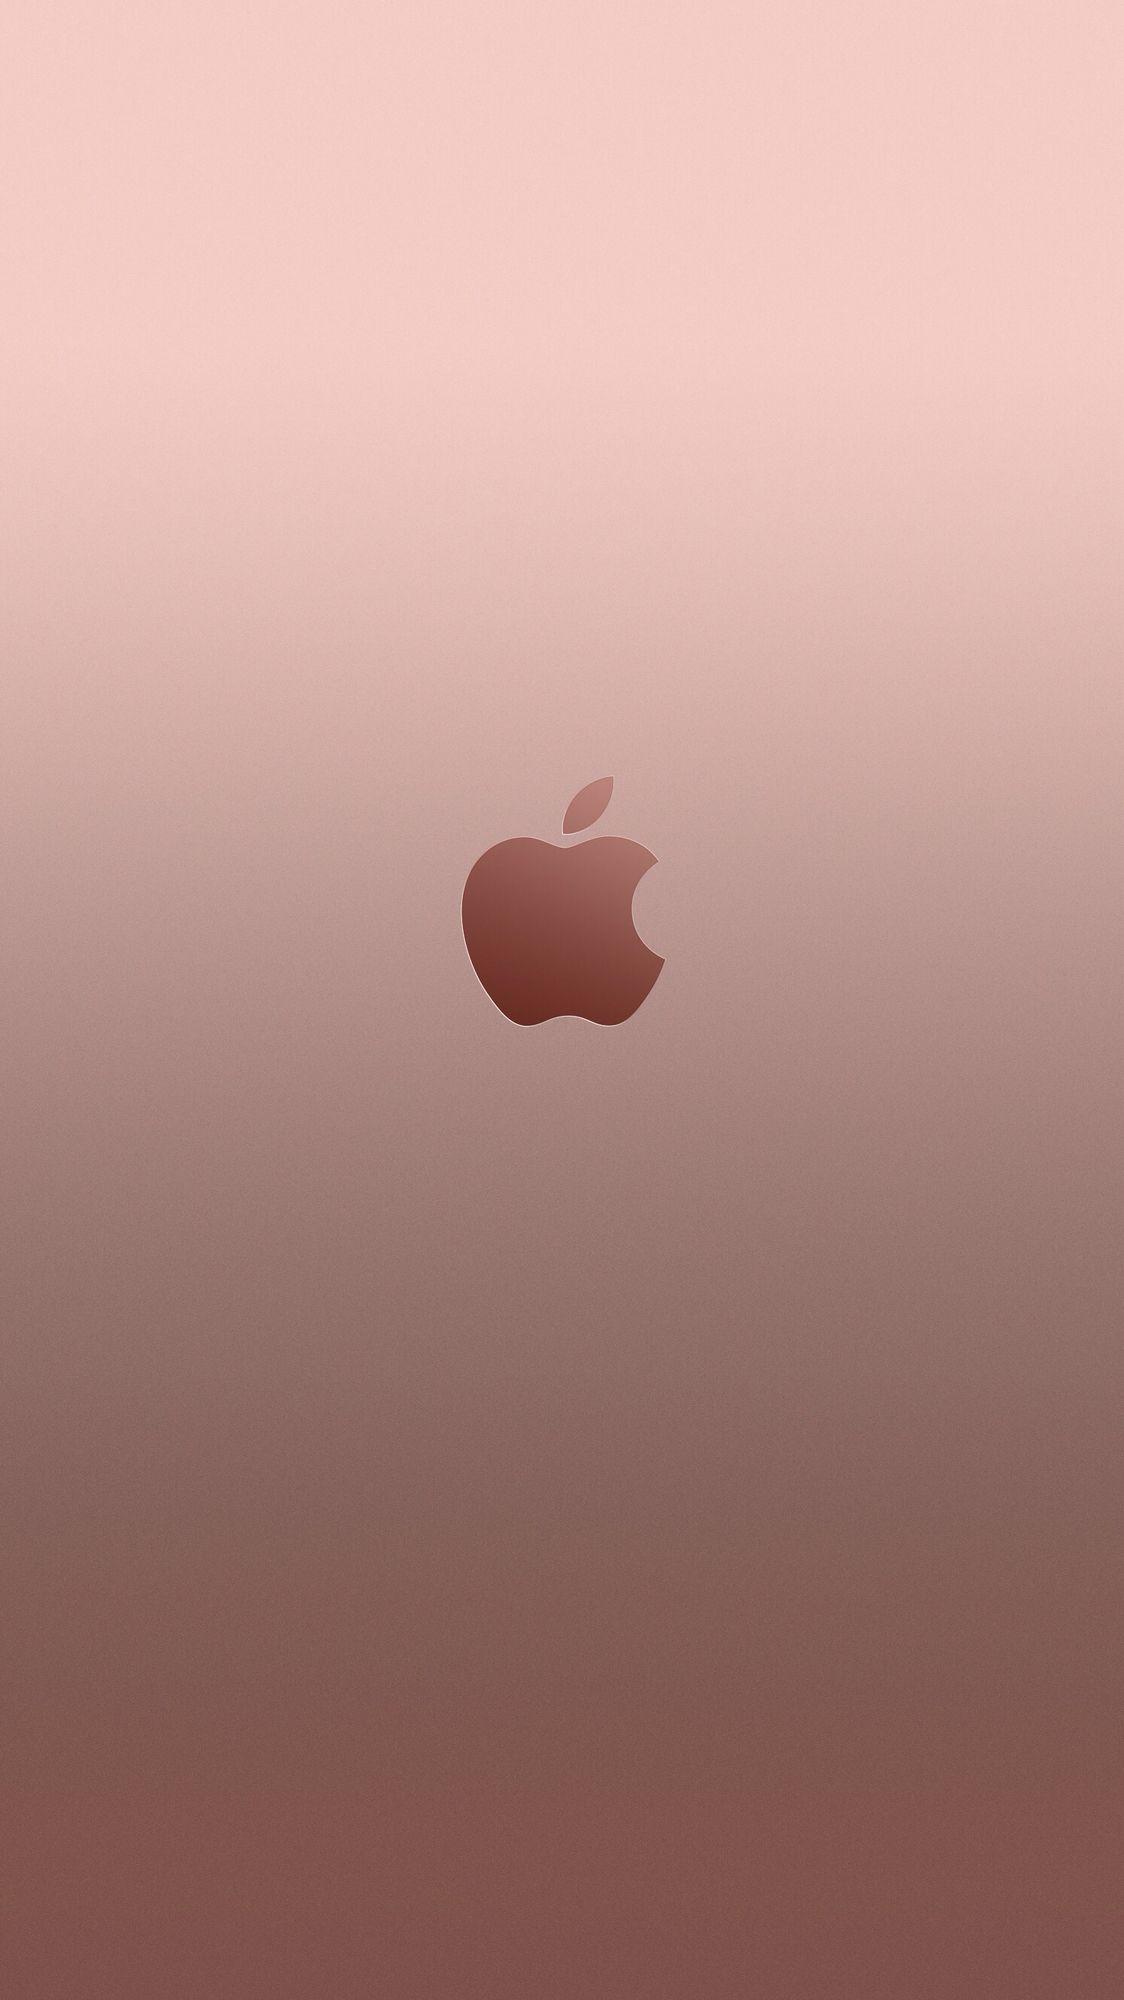 Pink iPhone 6s Wallpapers: Hình nền điện thoại iPhone 6s hồng nhẹ nhàng sẽ khiến bạn cảm thấy dịu dàng và lãng mạn hơn. Những bức ảnh tuyệt đẹp với màu hồng nhẹ nhàng sẽ khiến bạn muốn sở hữu ngay chiếc iPhone 6s này để trải nghiệm những điều đó.